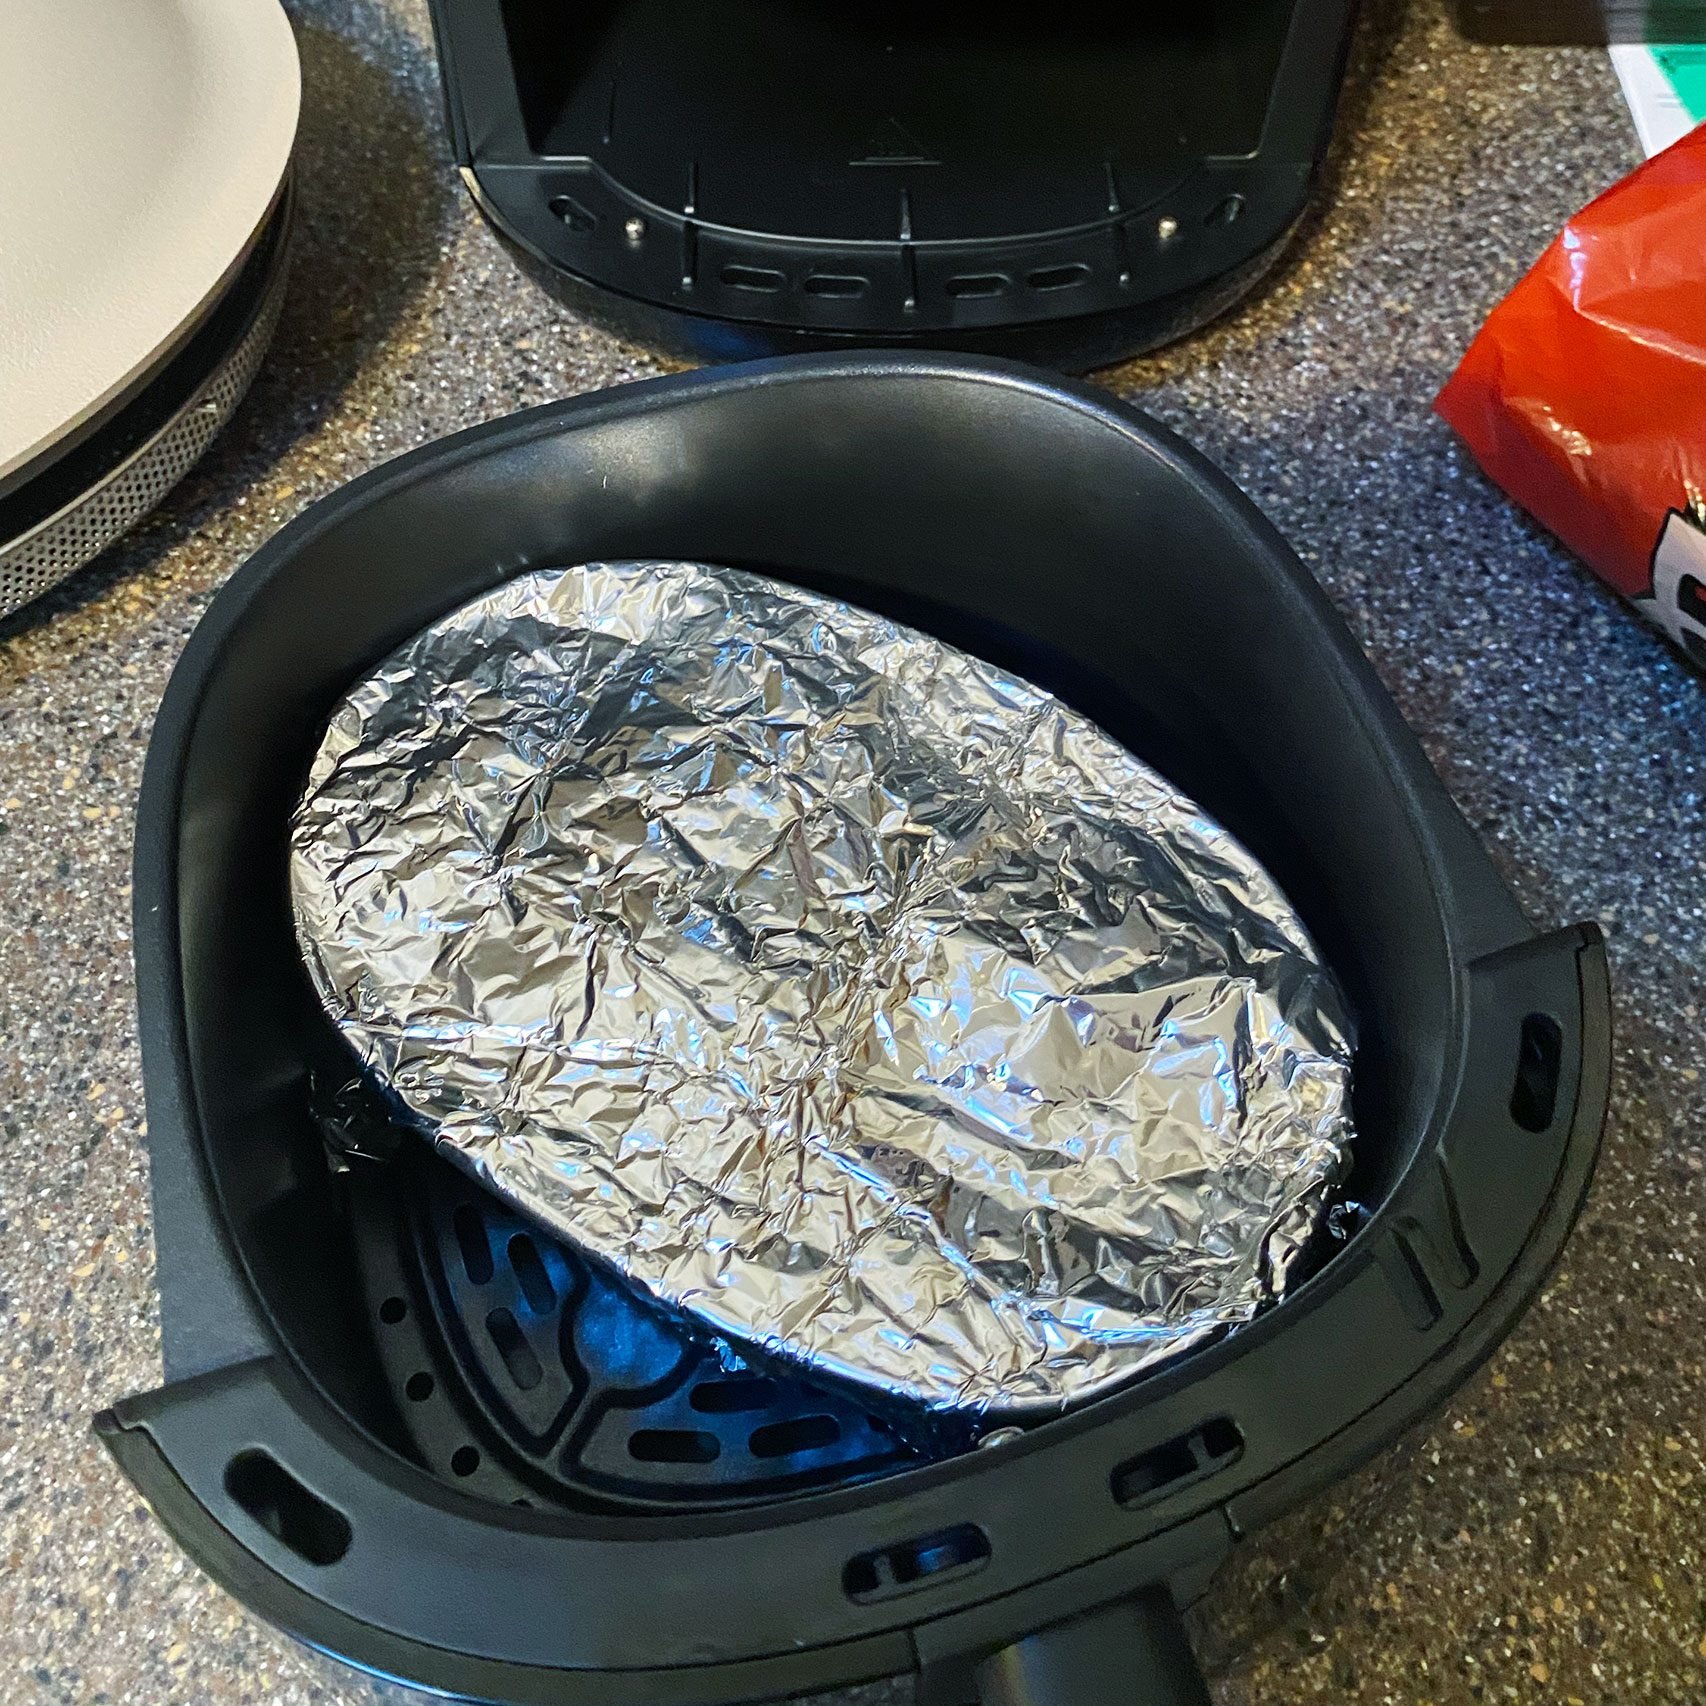 Outdoor Gourmet XL Aluminum Foil Roasting Pan